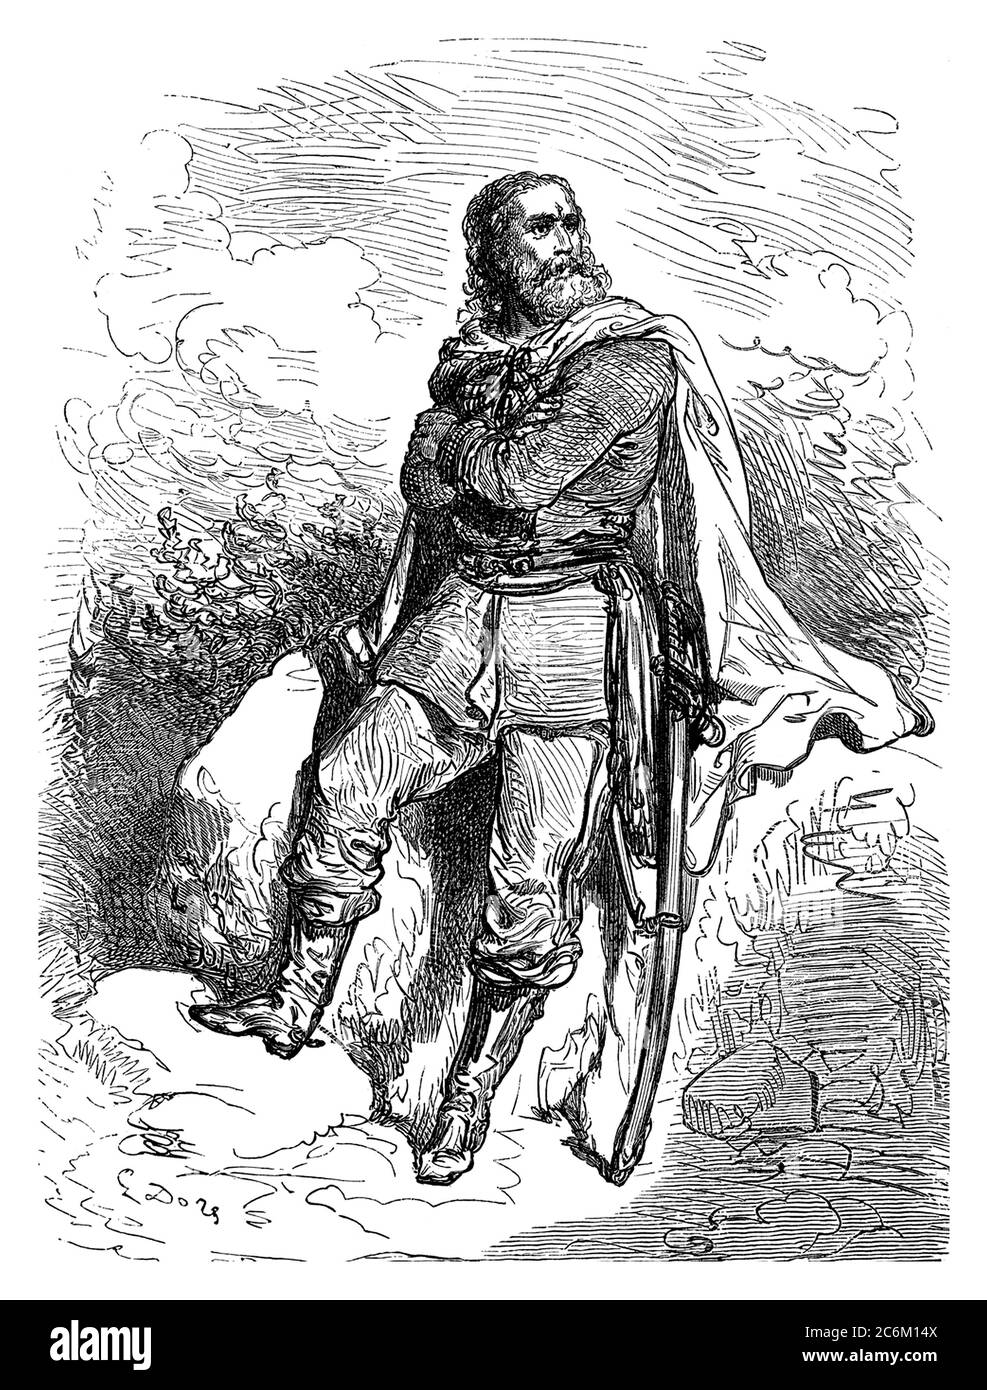 1860 c., ITALIA : l'eroe militare italiano GIUSEPPE GARIBALDI ( 1807 - 1882 ). Ritratto inciso da Gustave Doré . - POLITICO - POLITICA - POLITICA - Unità d'Italia - RISORGIMENTO - ITALIA - FOTO STORICHE - STORIA - barba - barba - incisione - incisione - illustrazione - illustrazione - illustrazione --- Archivio GBB Foto Stock